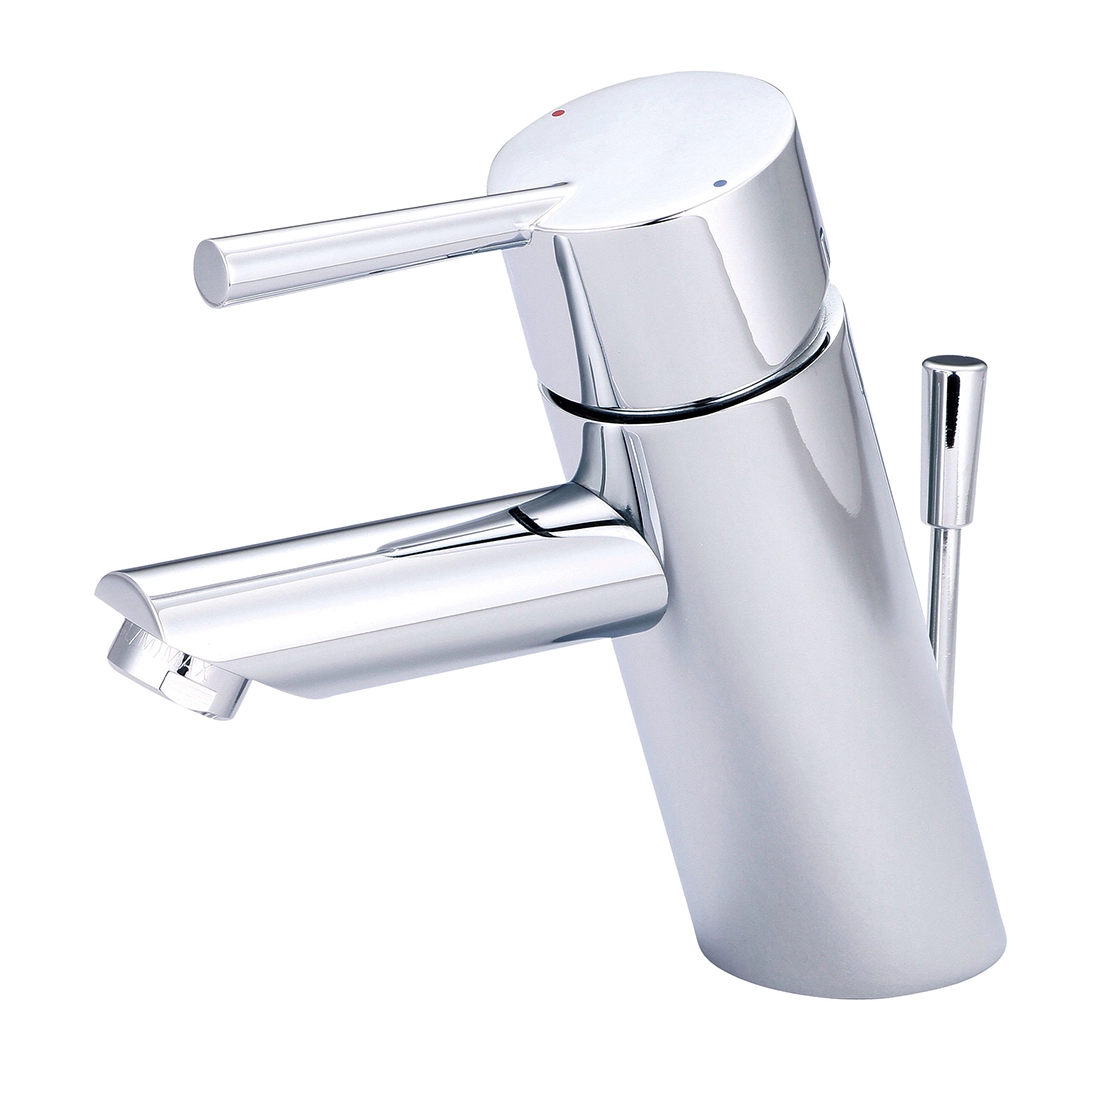 i2 Single Handle Bathroom Faucet Model# L-6050